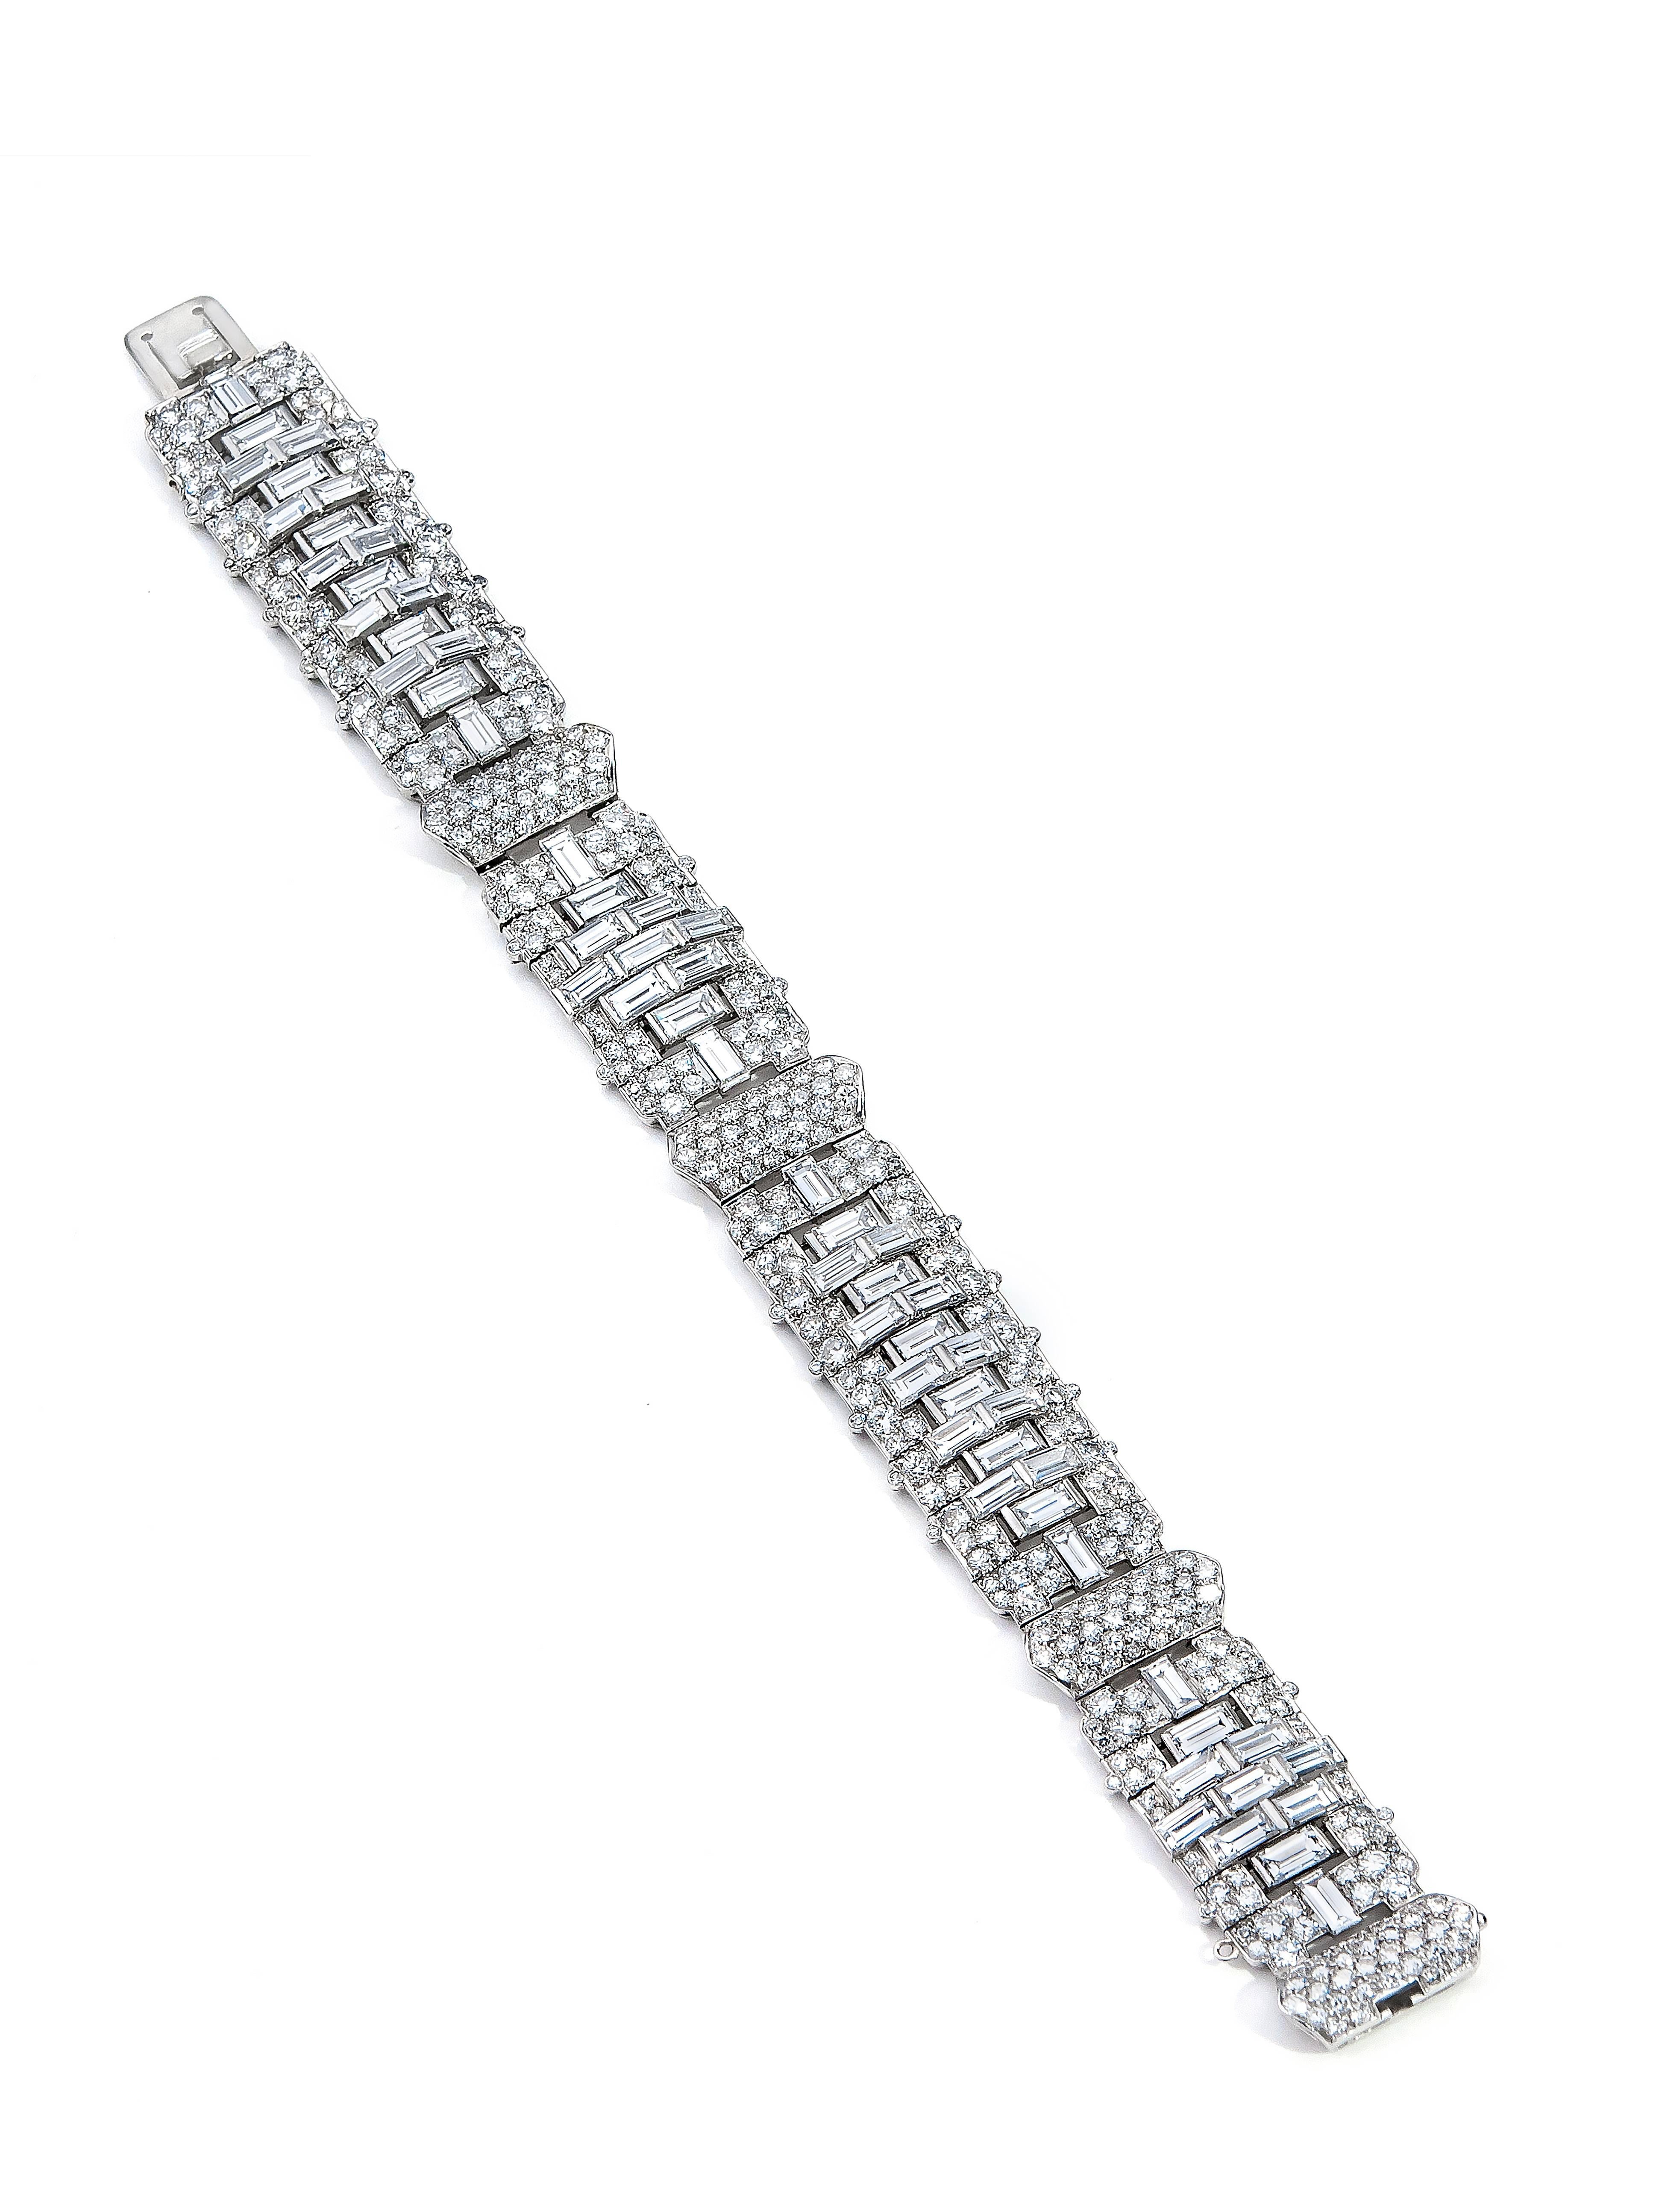 Dieses Armband ist ein originales Art Deco Stück mit erstaunlicher Qualität und Handwerkskunst. Unserer Meinung nach ist es eines der besten Beispiele seiner Art, die wir gesehen haben. Das Gesamtgewicht der Diamanten beträgt etwa 24,5 Karat. Dazu